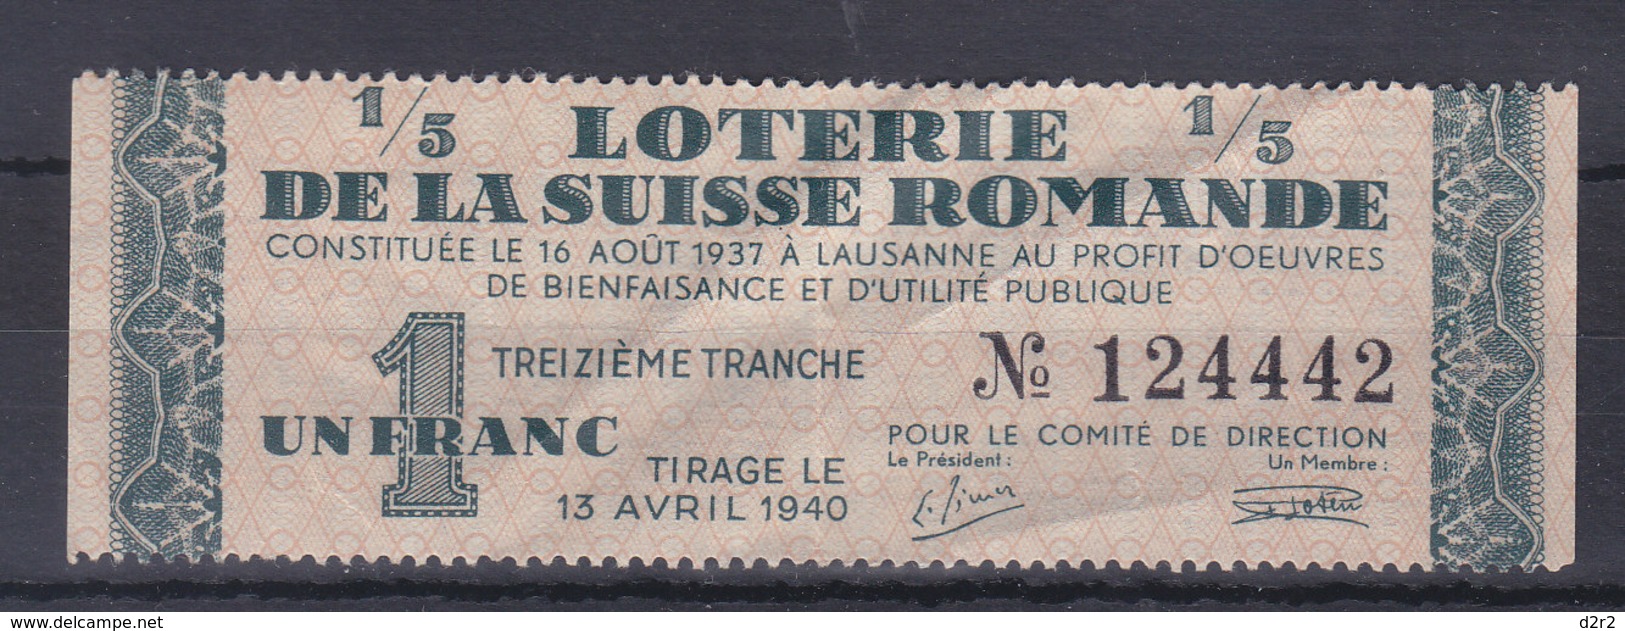 LOTERIE DE LA SUISSE ROMANDE - 13.04.1940 - 1.-- TREIZIEME TRANCHE.- TTB - Billets De Loterie